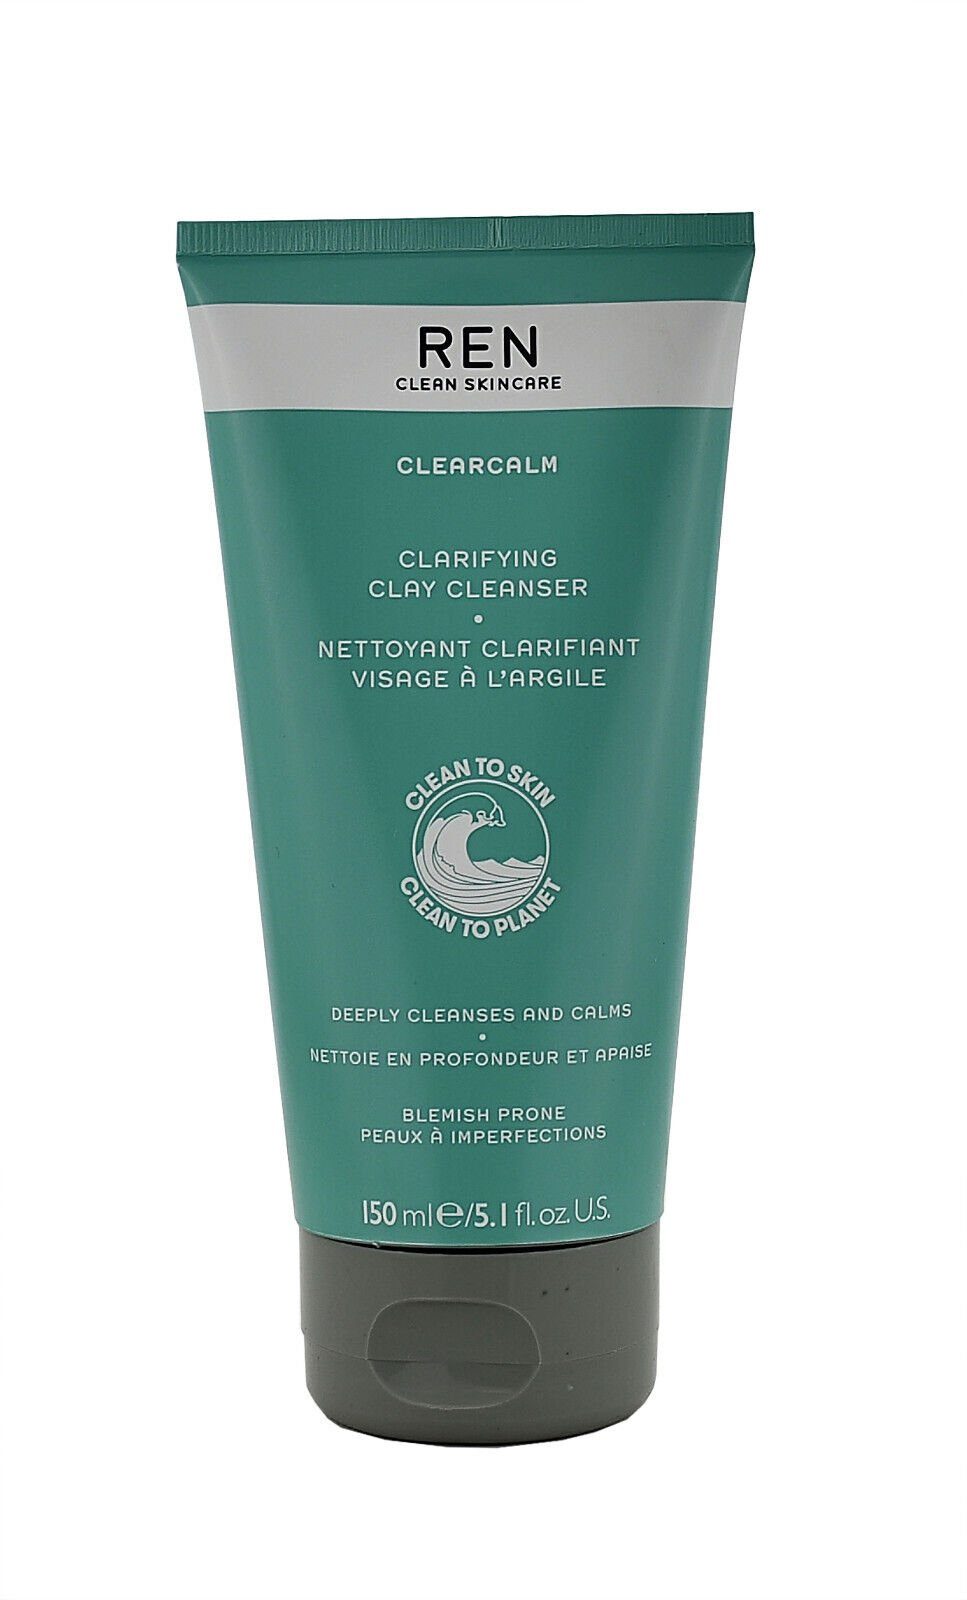 REN Clean Skincare Gesichts-Reinigungscreme Clay 150ml - Clarifying REN Cleanser